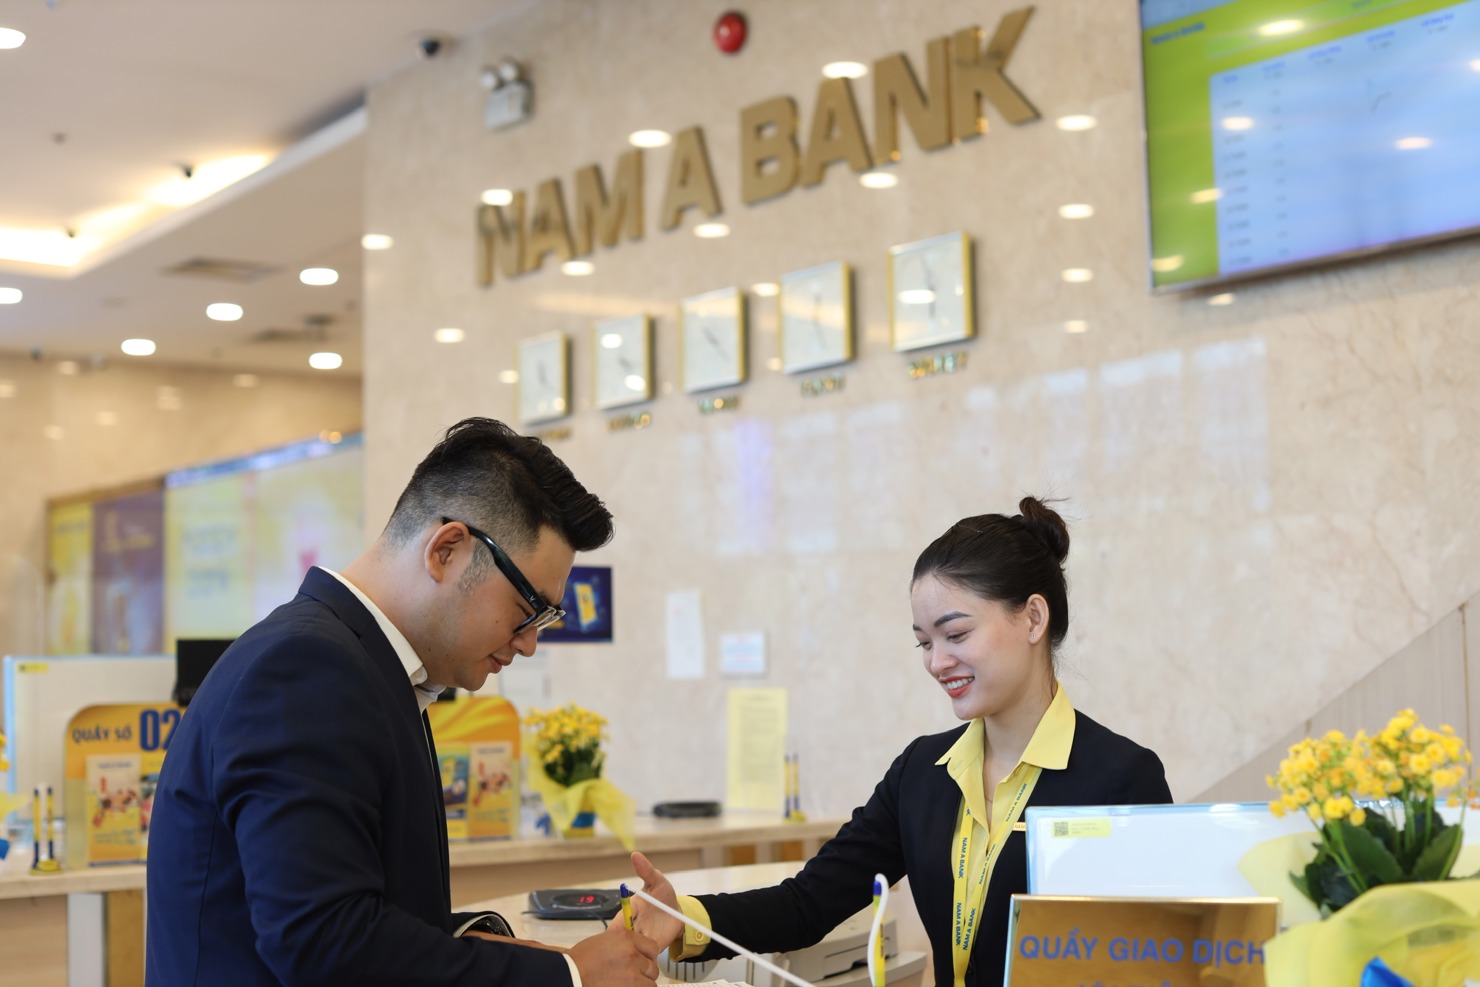 Nam A Bank đã tăng cường “xanh hóa” tín dụng hướng đến mục tiêu phát triển bền vững. Ảnh: Nam A Bank